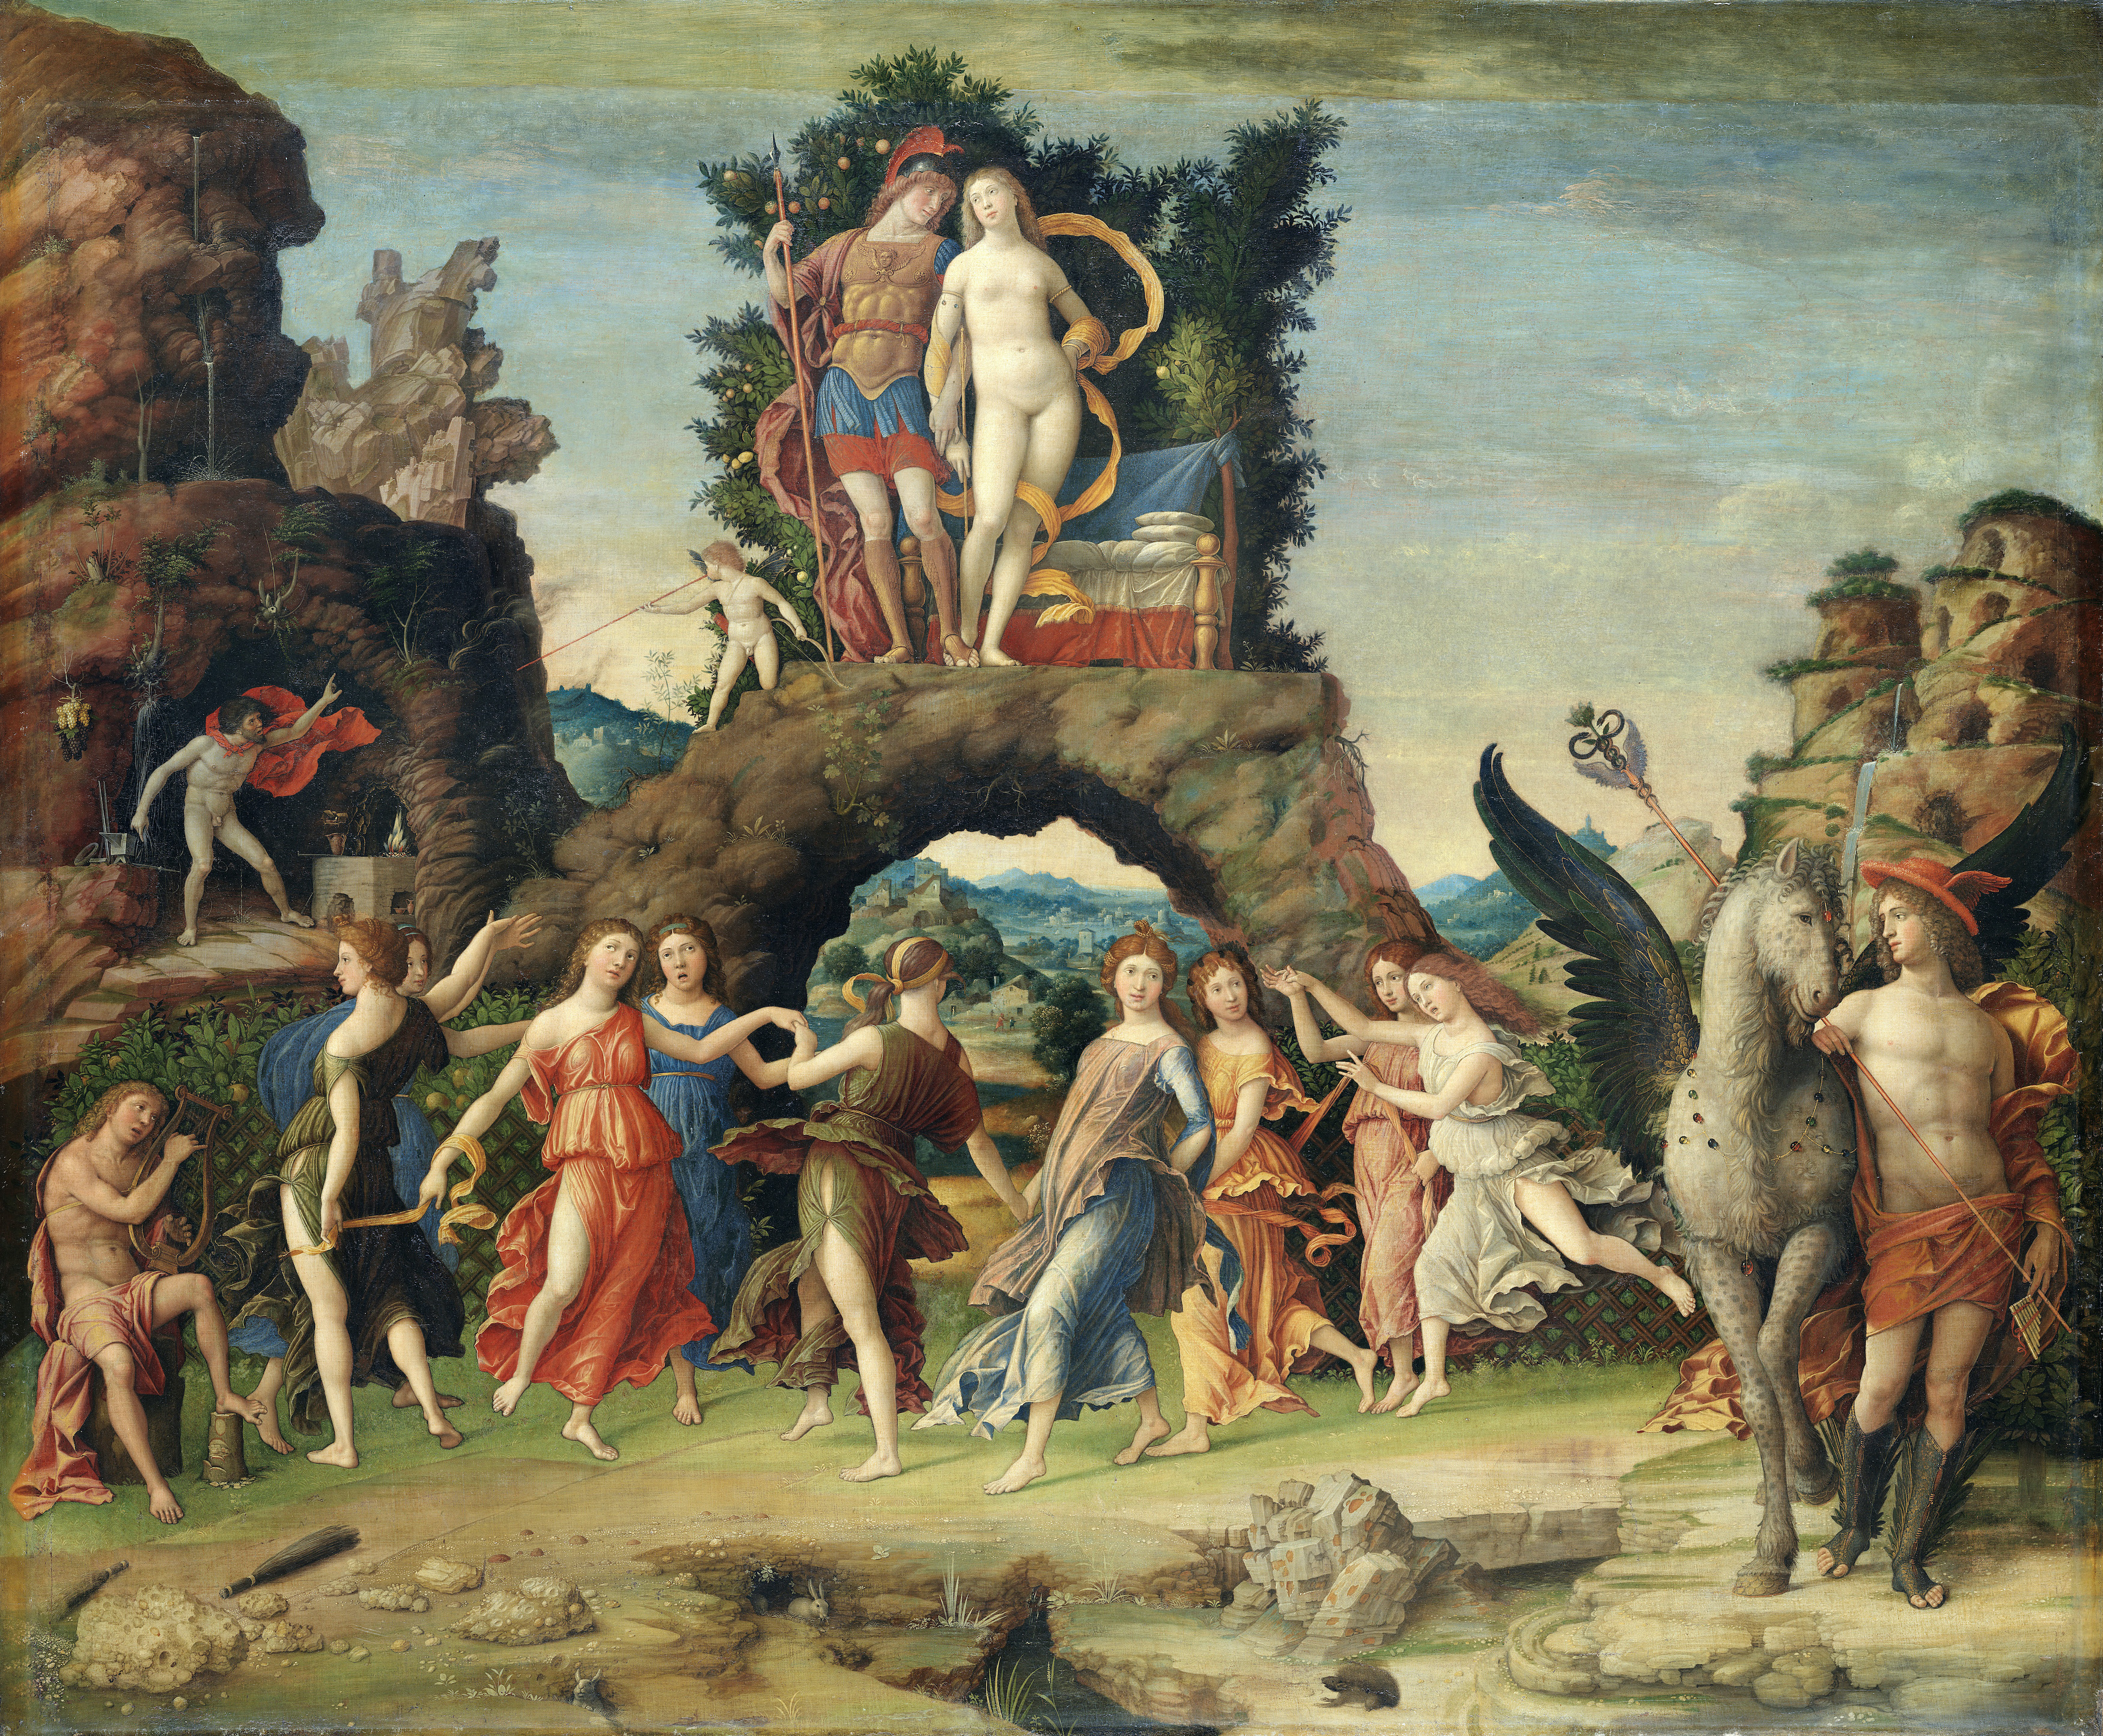 Parnassus by Andrea Mantegna - 1497 - 159 × 192 cm Musée du Louvre